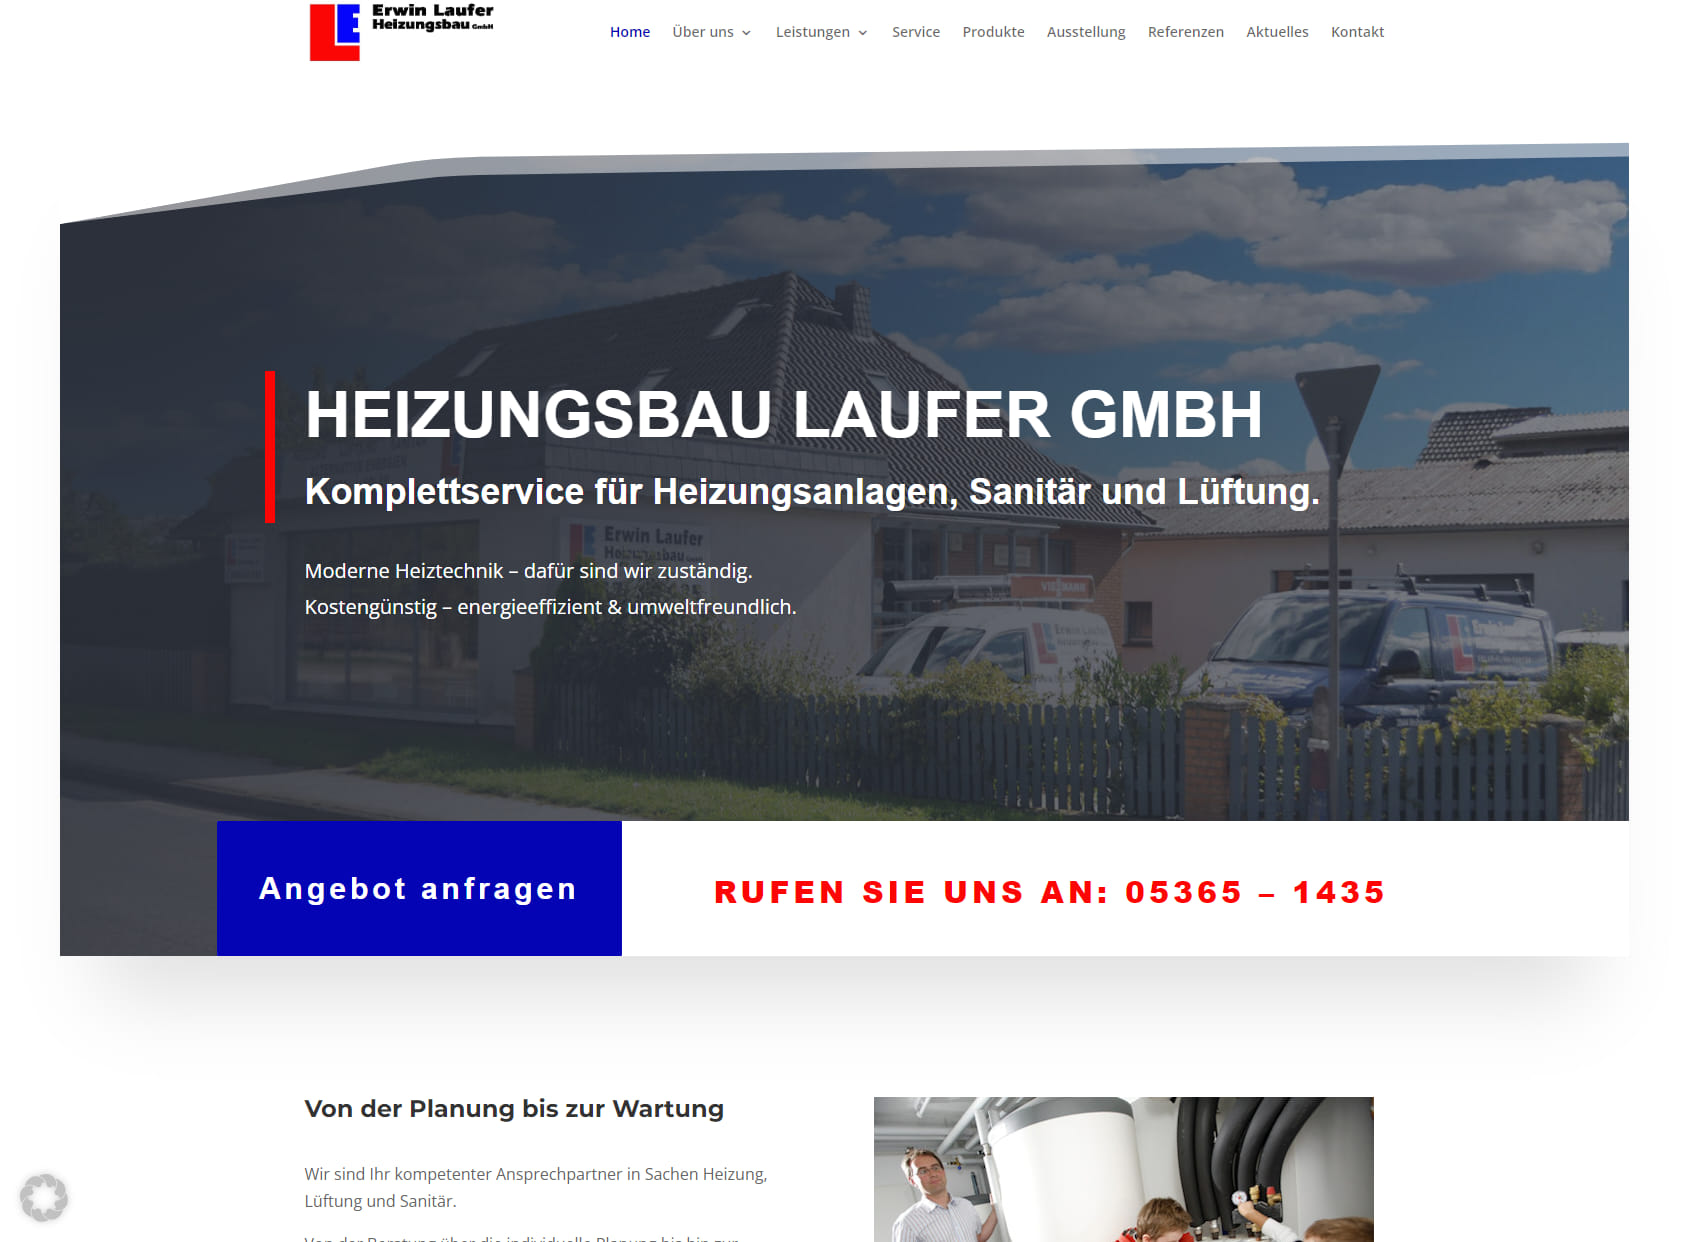 Erwin Laufer Heizungsbau GmbH